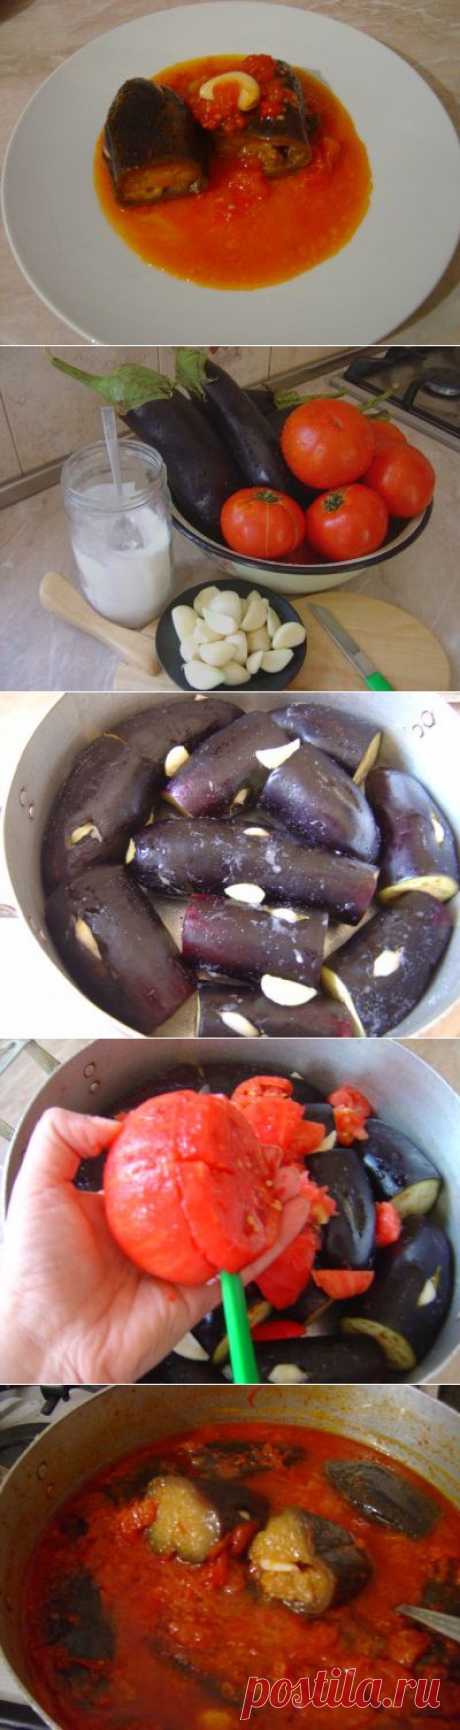 Баклажаны в томатном соусе по-армянски (холодное блюдо!) : Вегетарианская и постная кухня